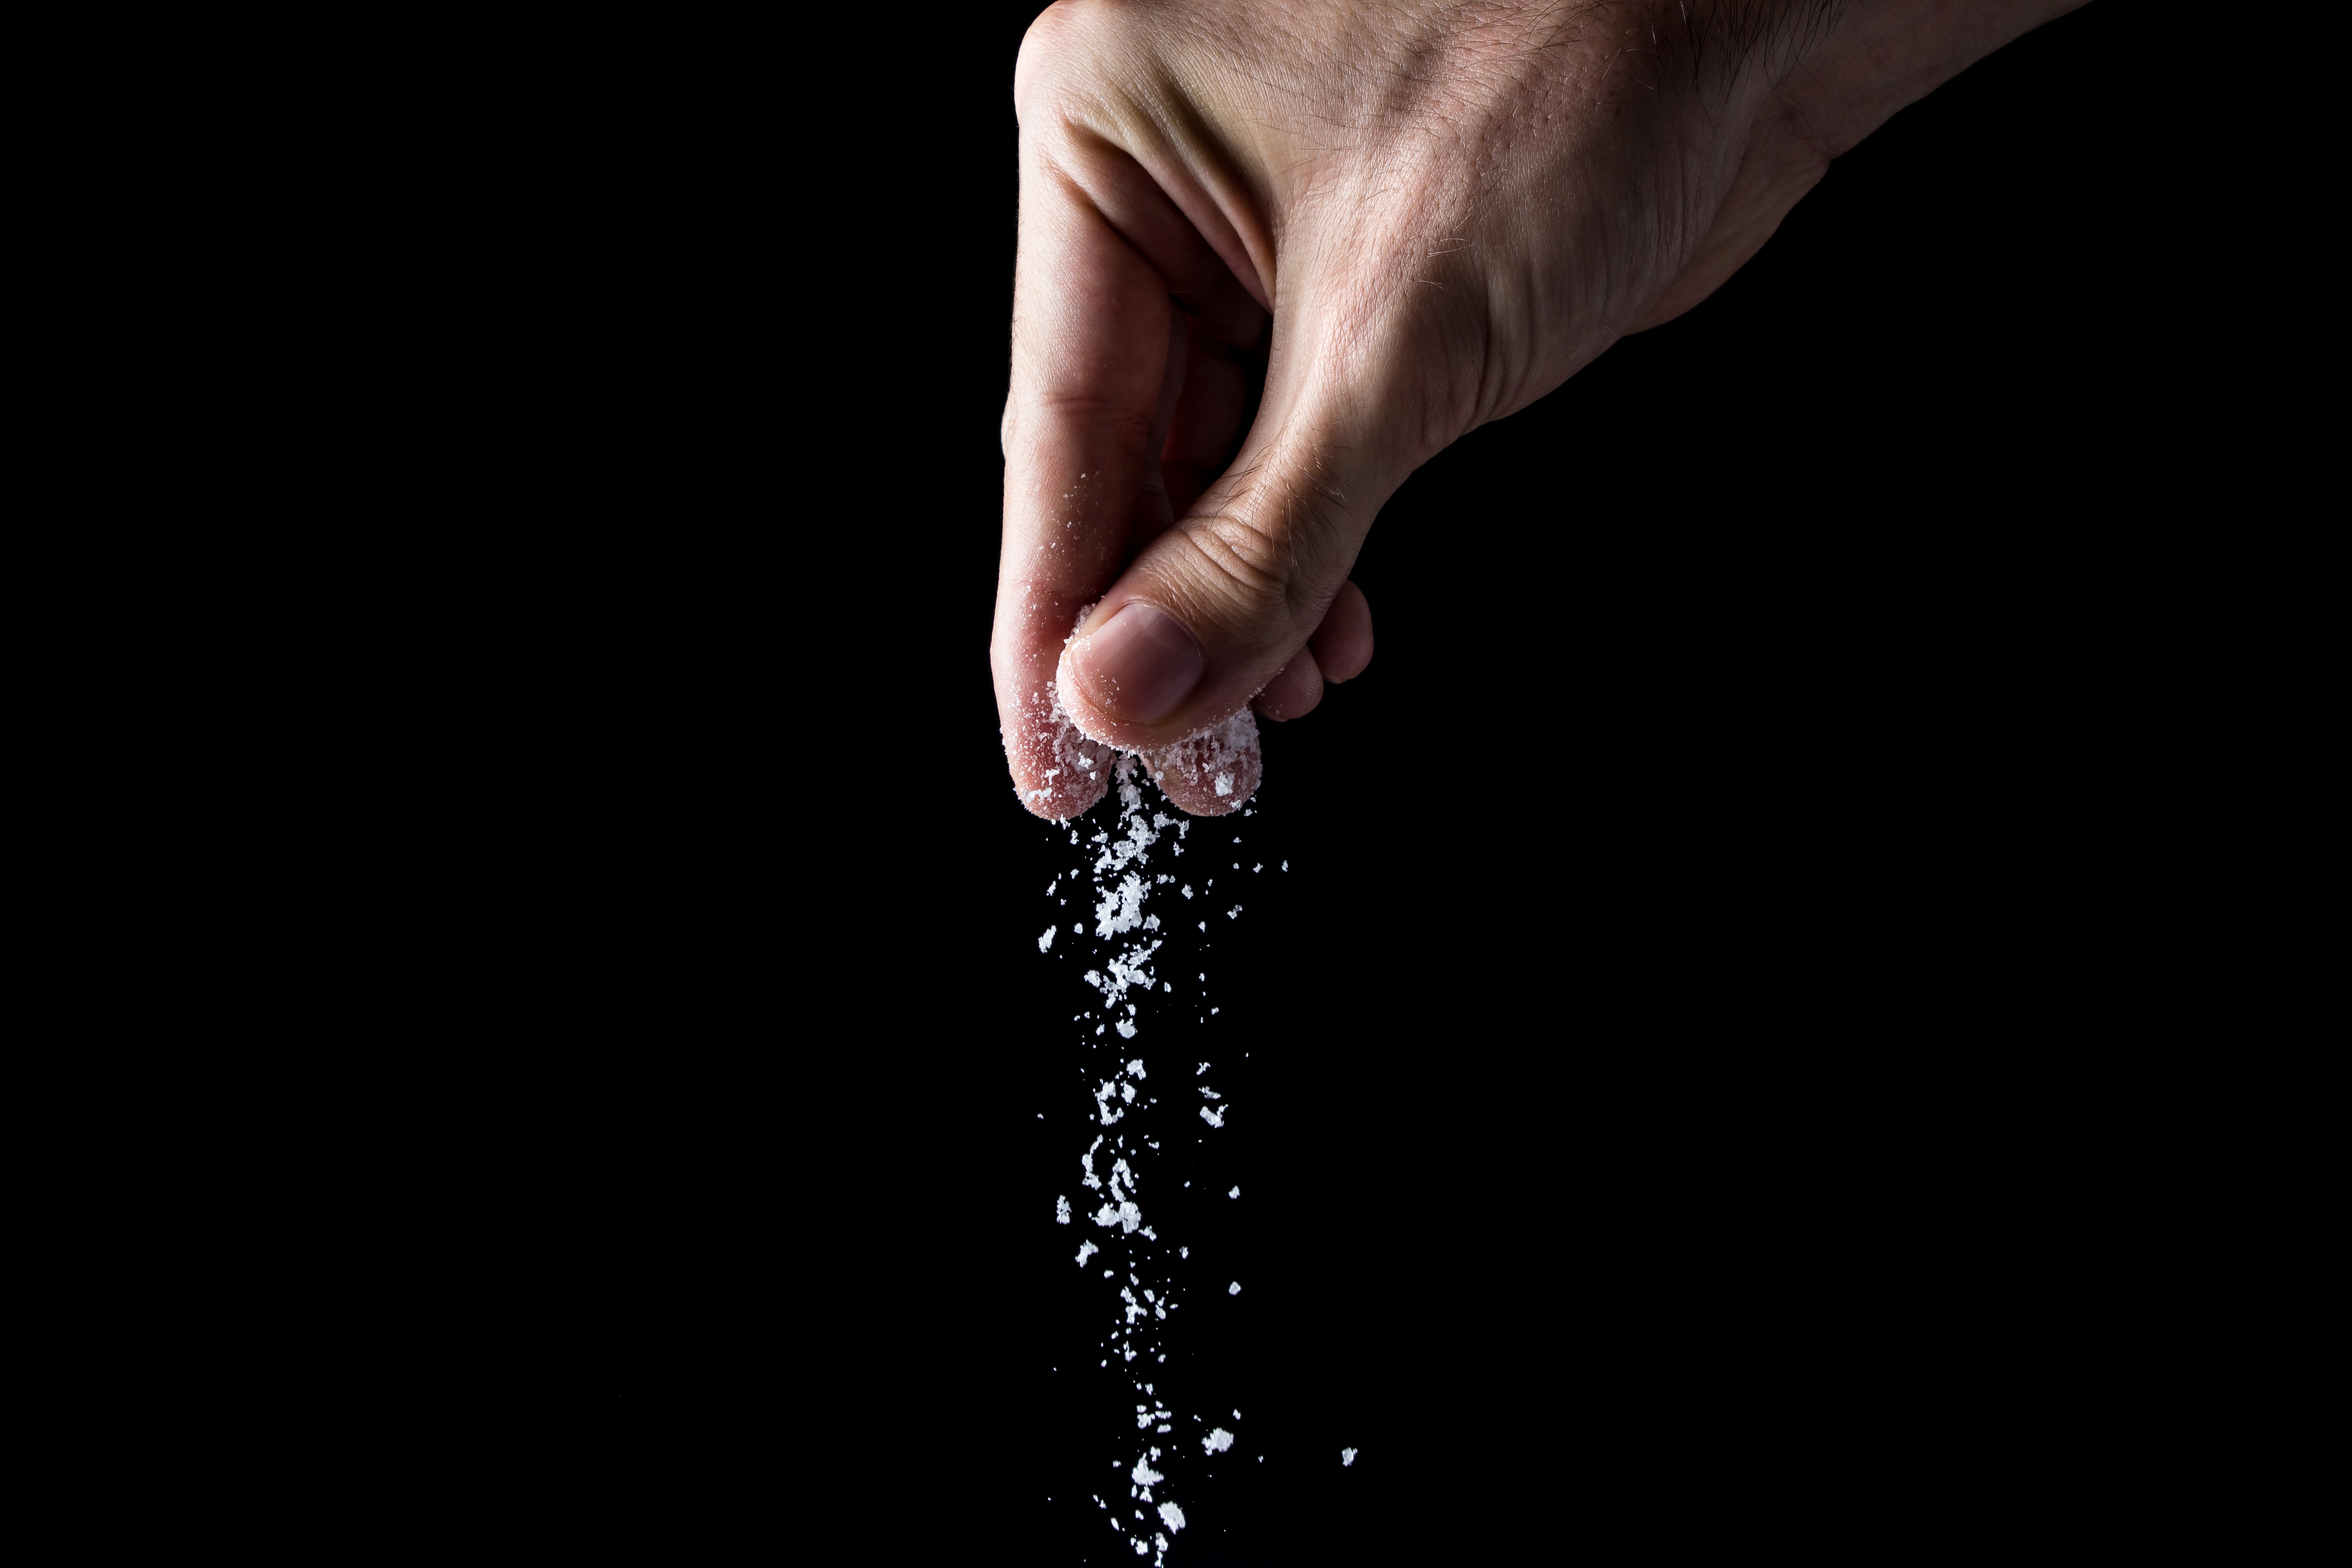 Salt being sprinkled against a black background